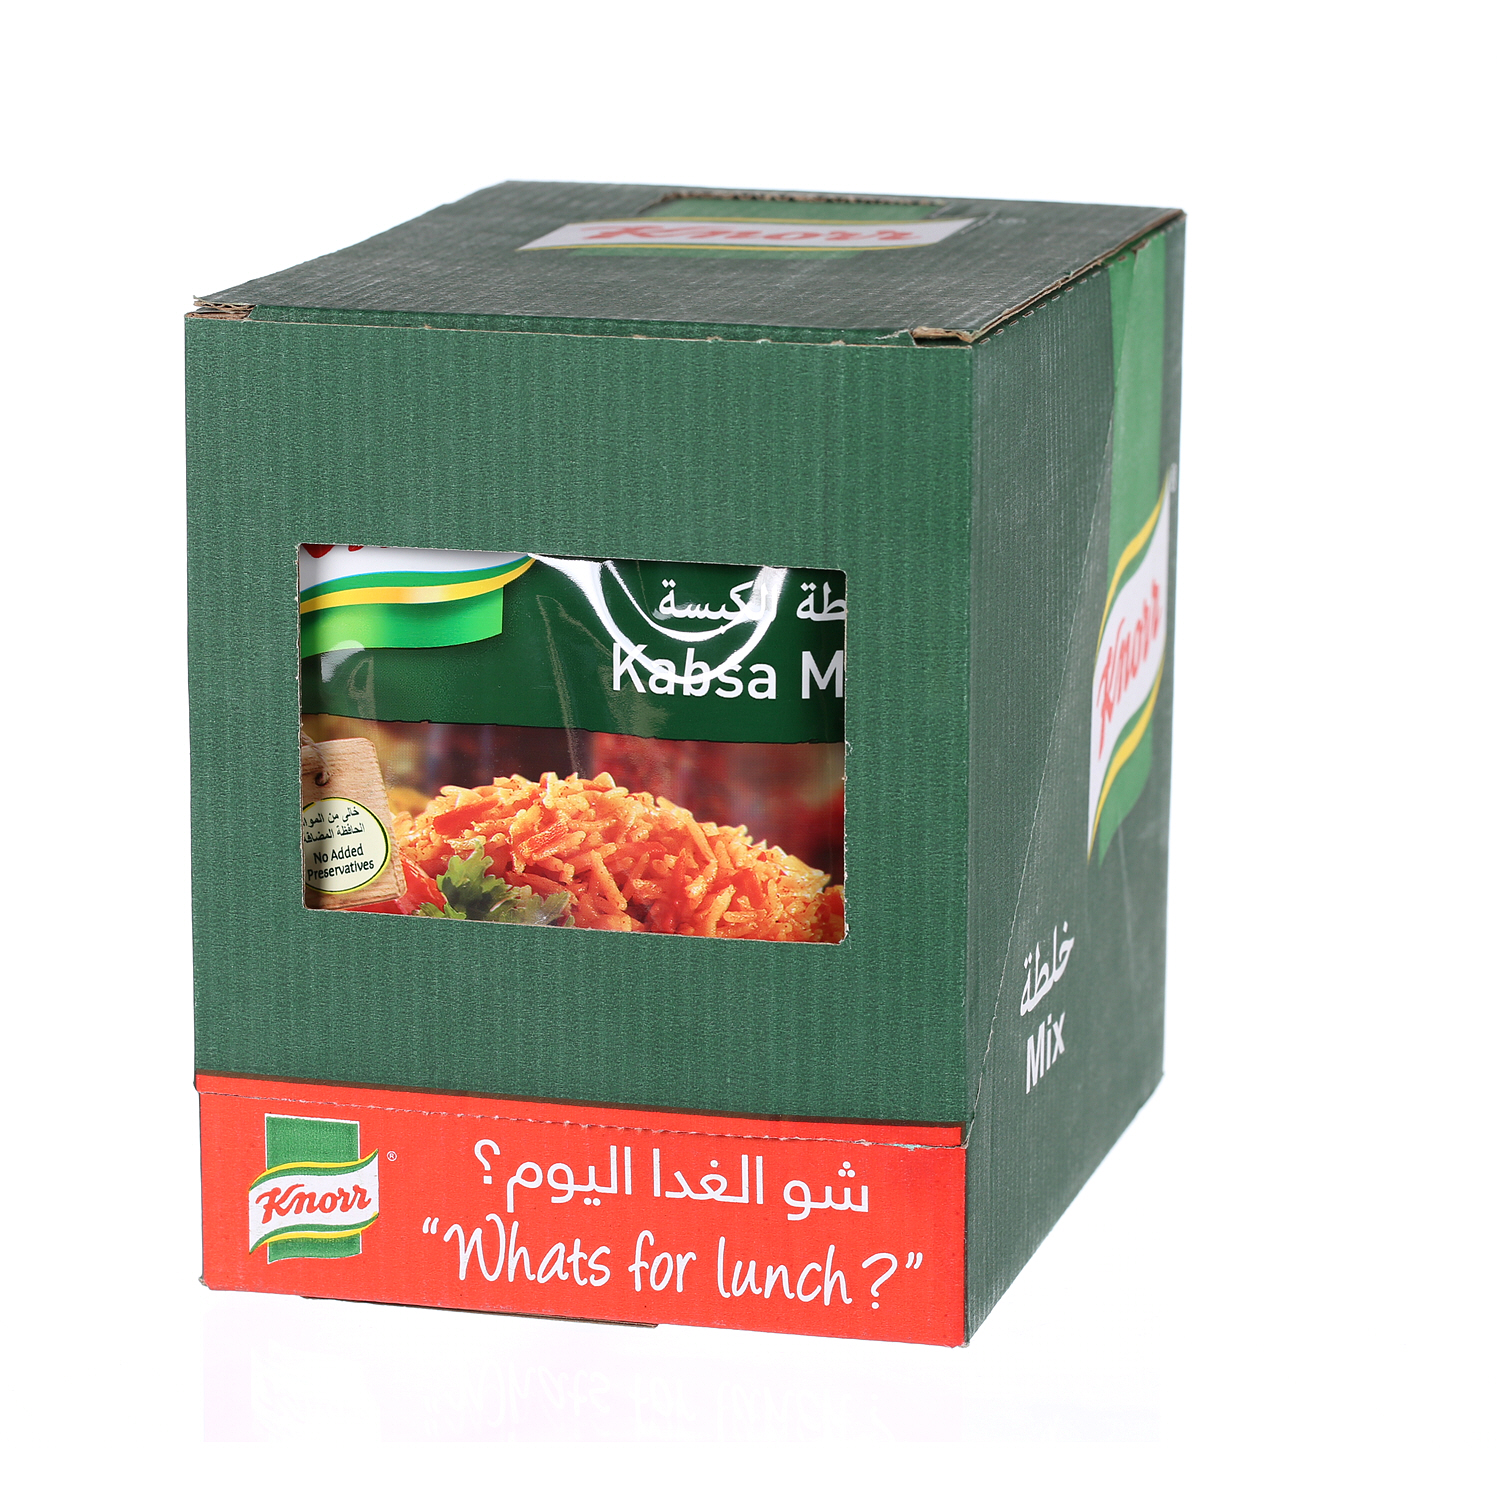 Knorr Kabsa Mix 30 g × 12 Pack